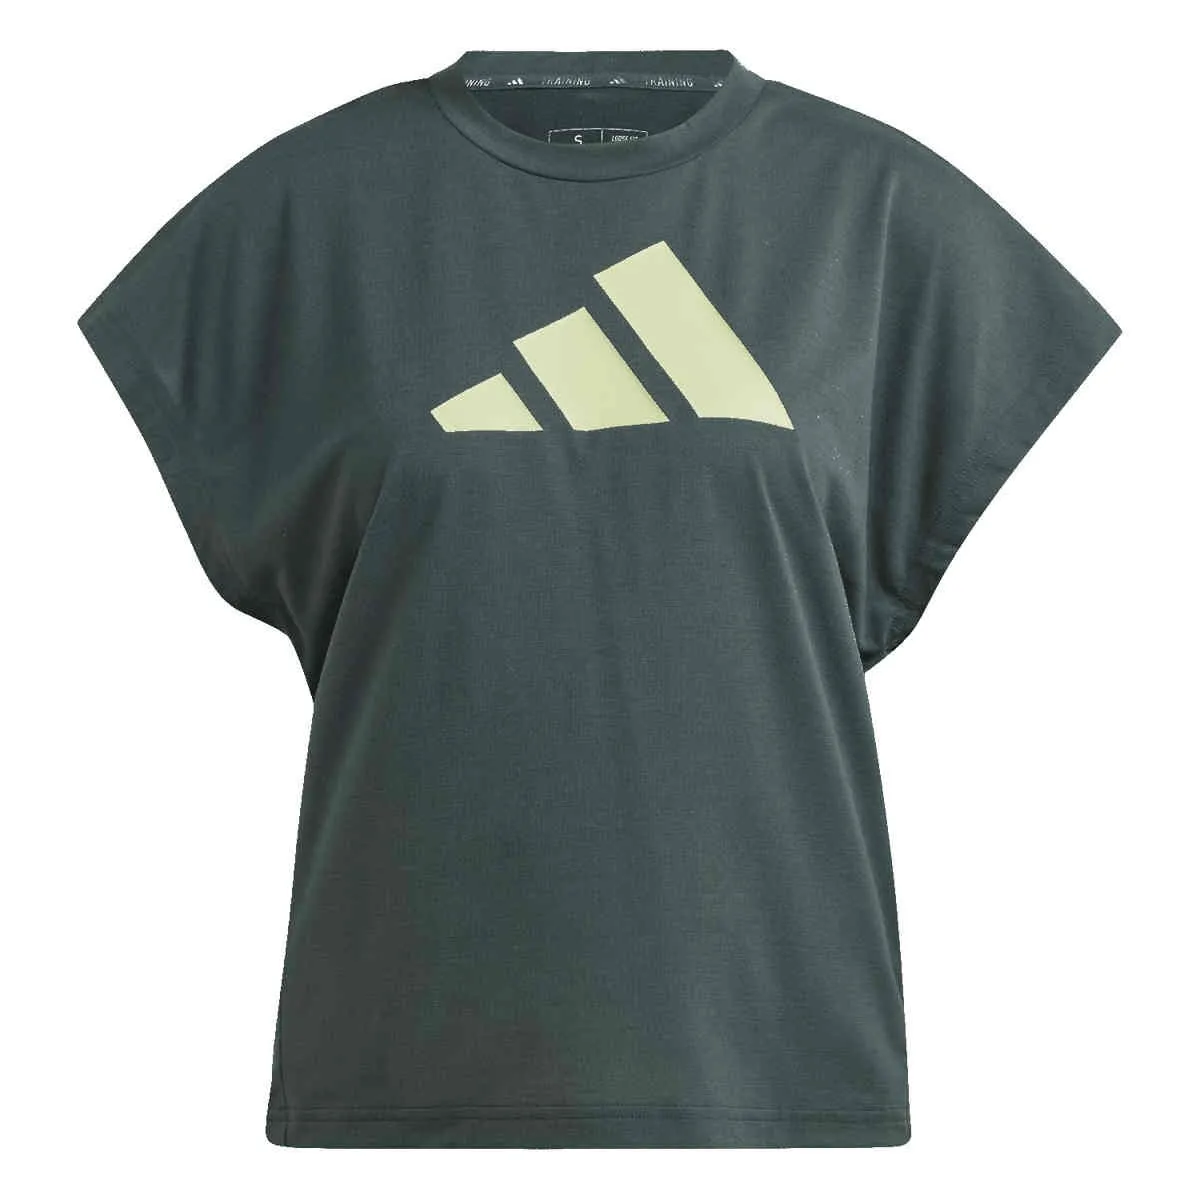 adidas T-Shirt TI Logo dunkelgrün